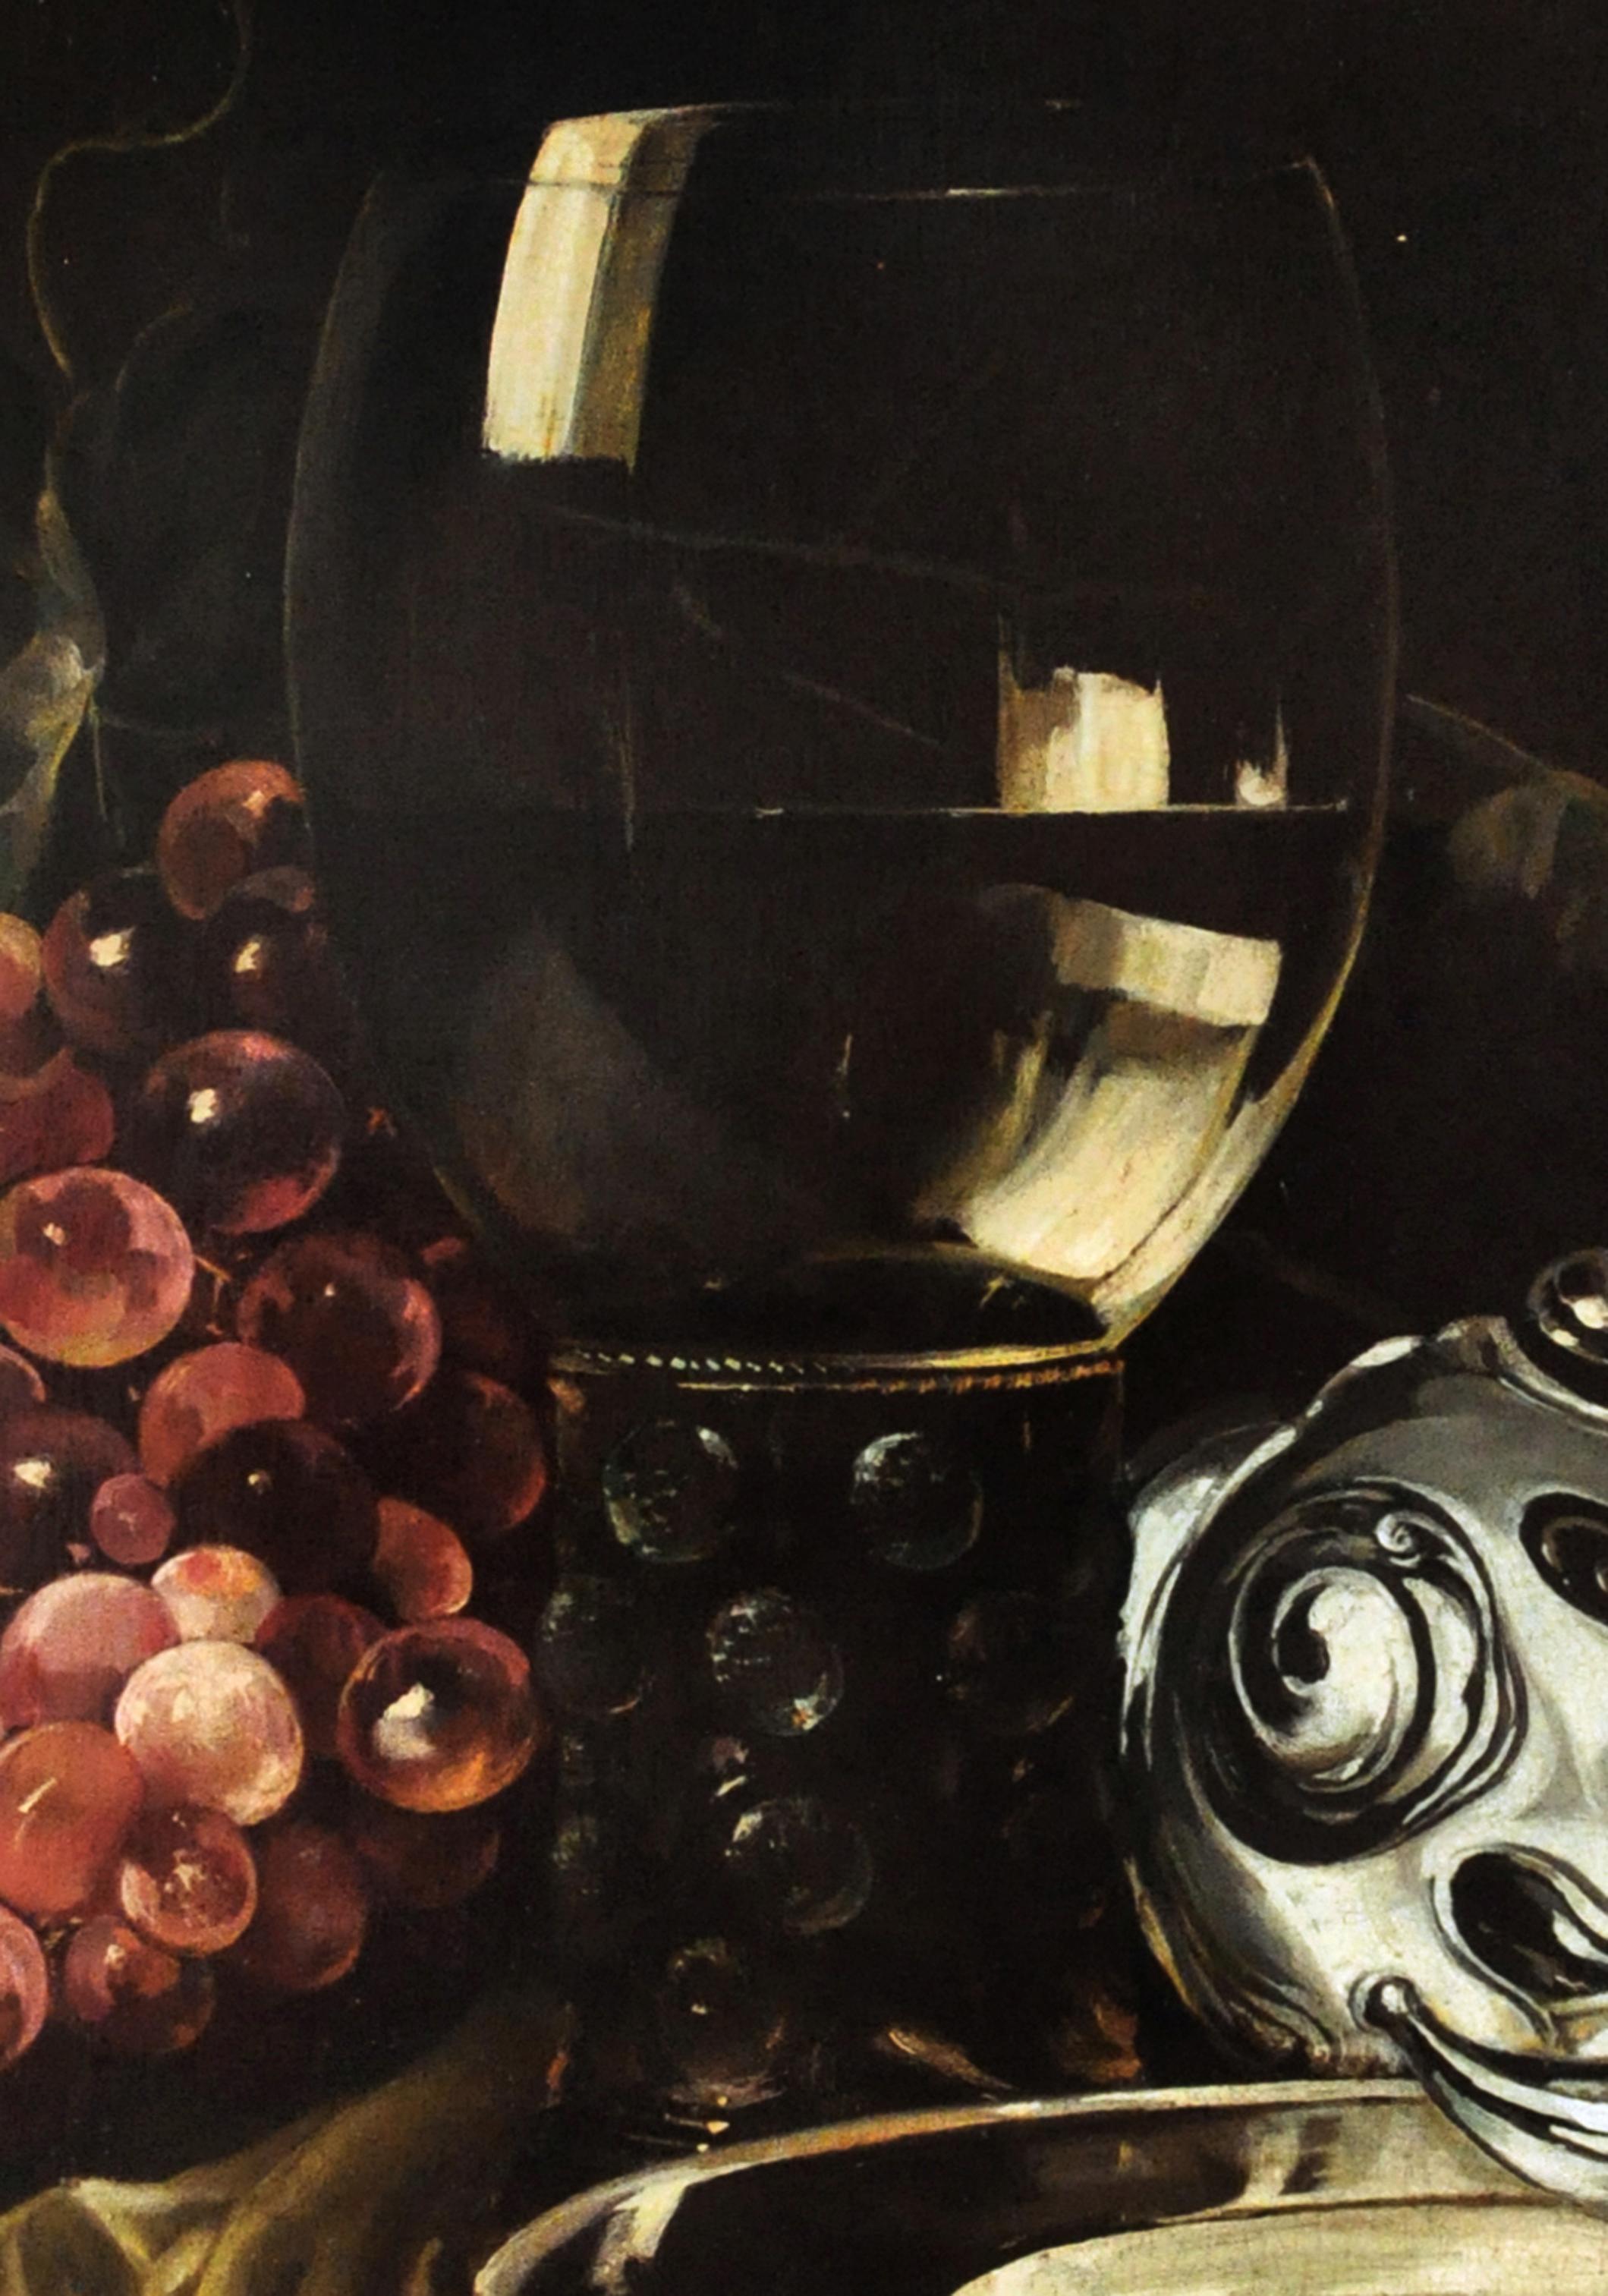 Stilleben - Salvatore Marinelli Italia 2007 - Öl auf Leinwand cm. 60x40
Das Gemälde von Salvatore Marinelli ist eine schöne Neuinterpretation des niederländischen Barockmalers Pieter Claesz, einem der bekanntesten Spezialisten für Stillleben, dessen